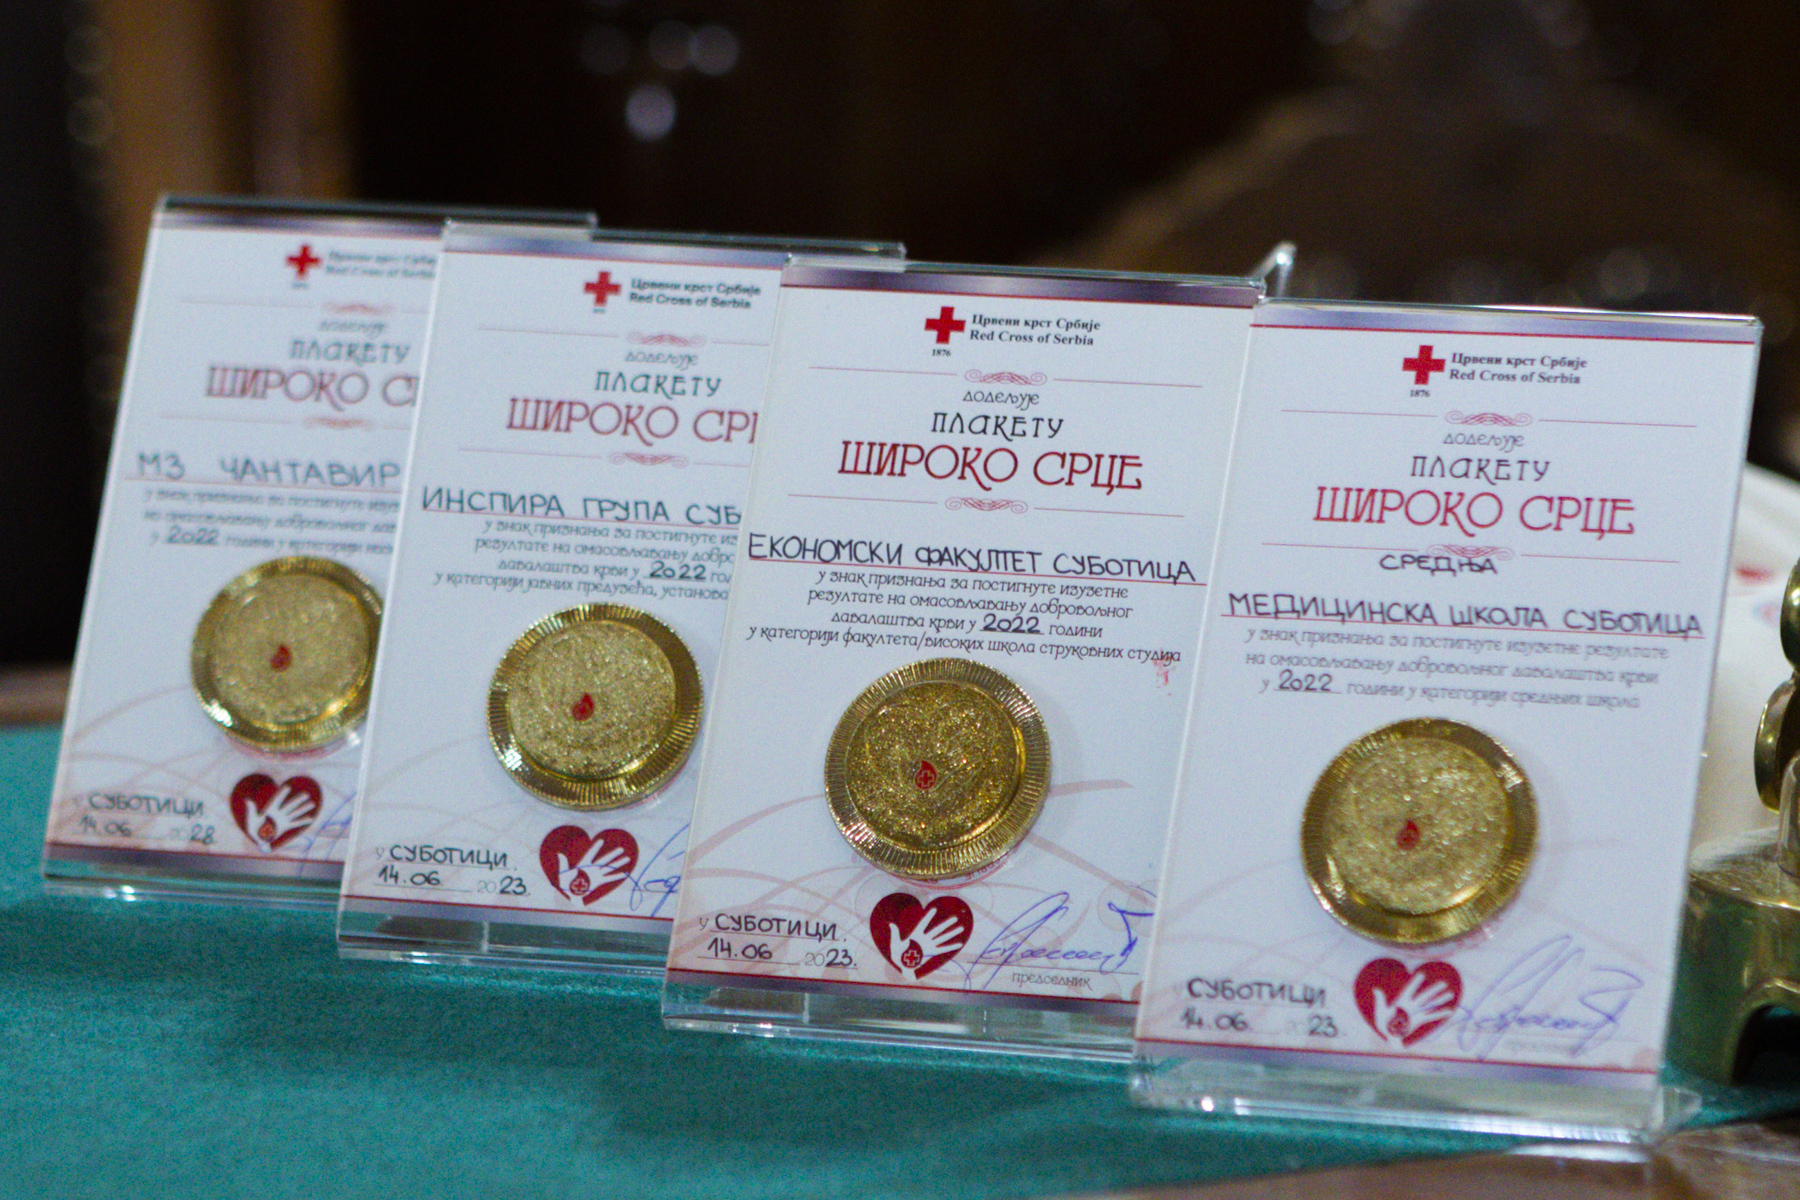 Svetski dan dobrovoljnih davalaca krvi-subotica 